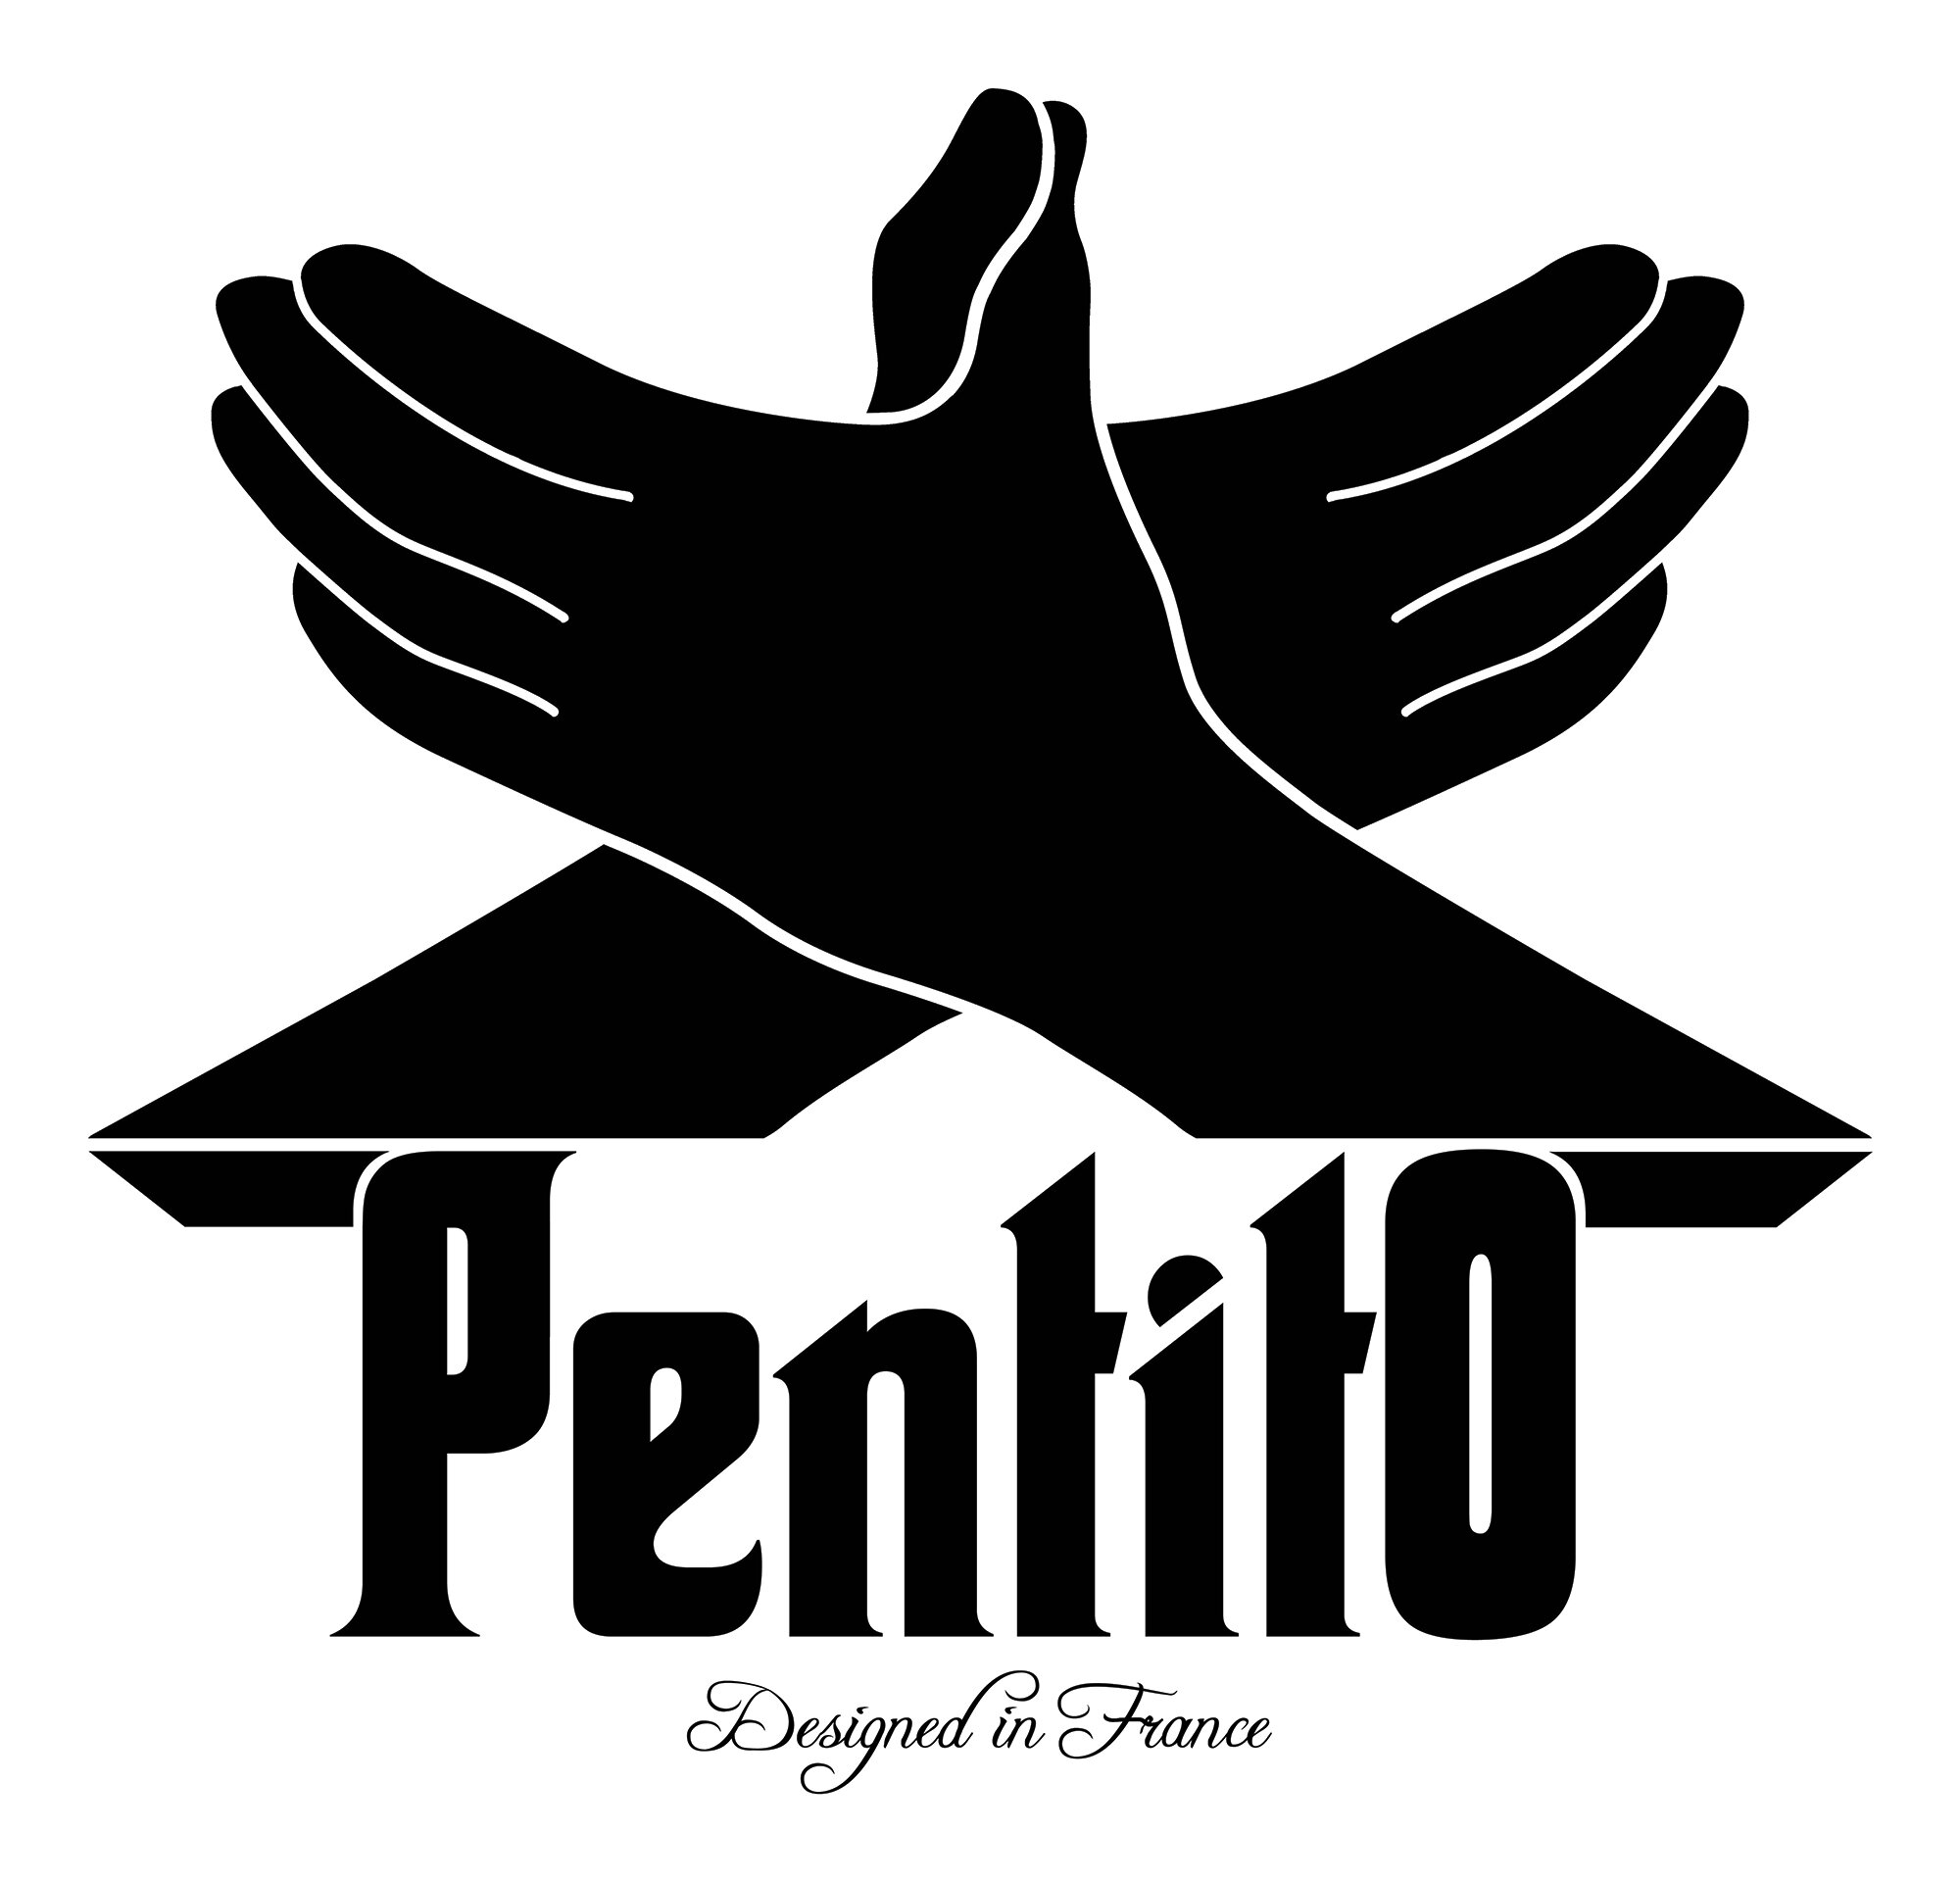 PentitO
Clothes & Accessories.
Designed in France